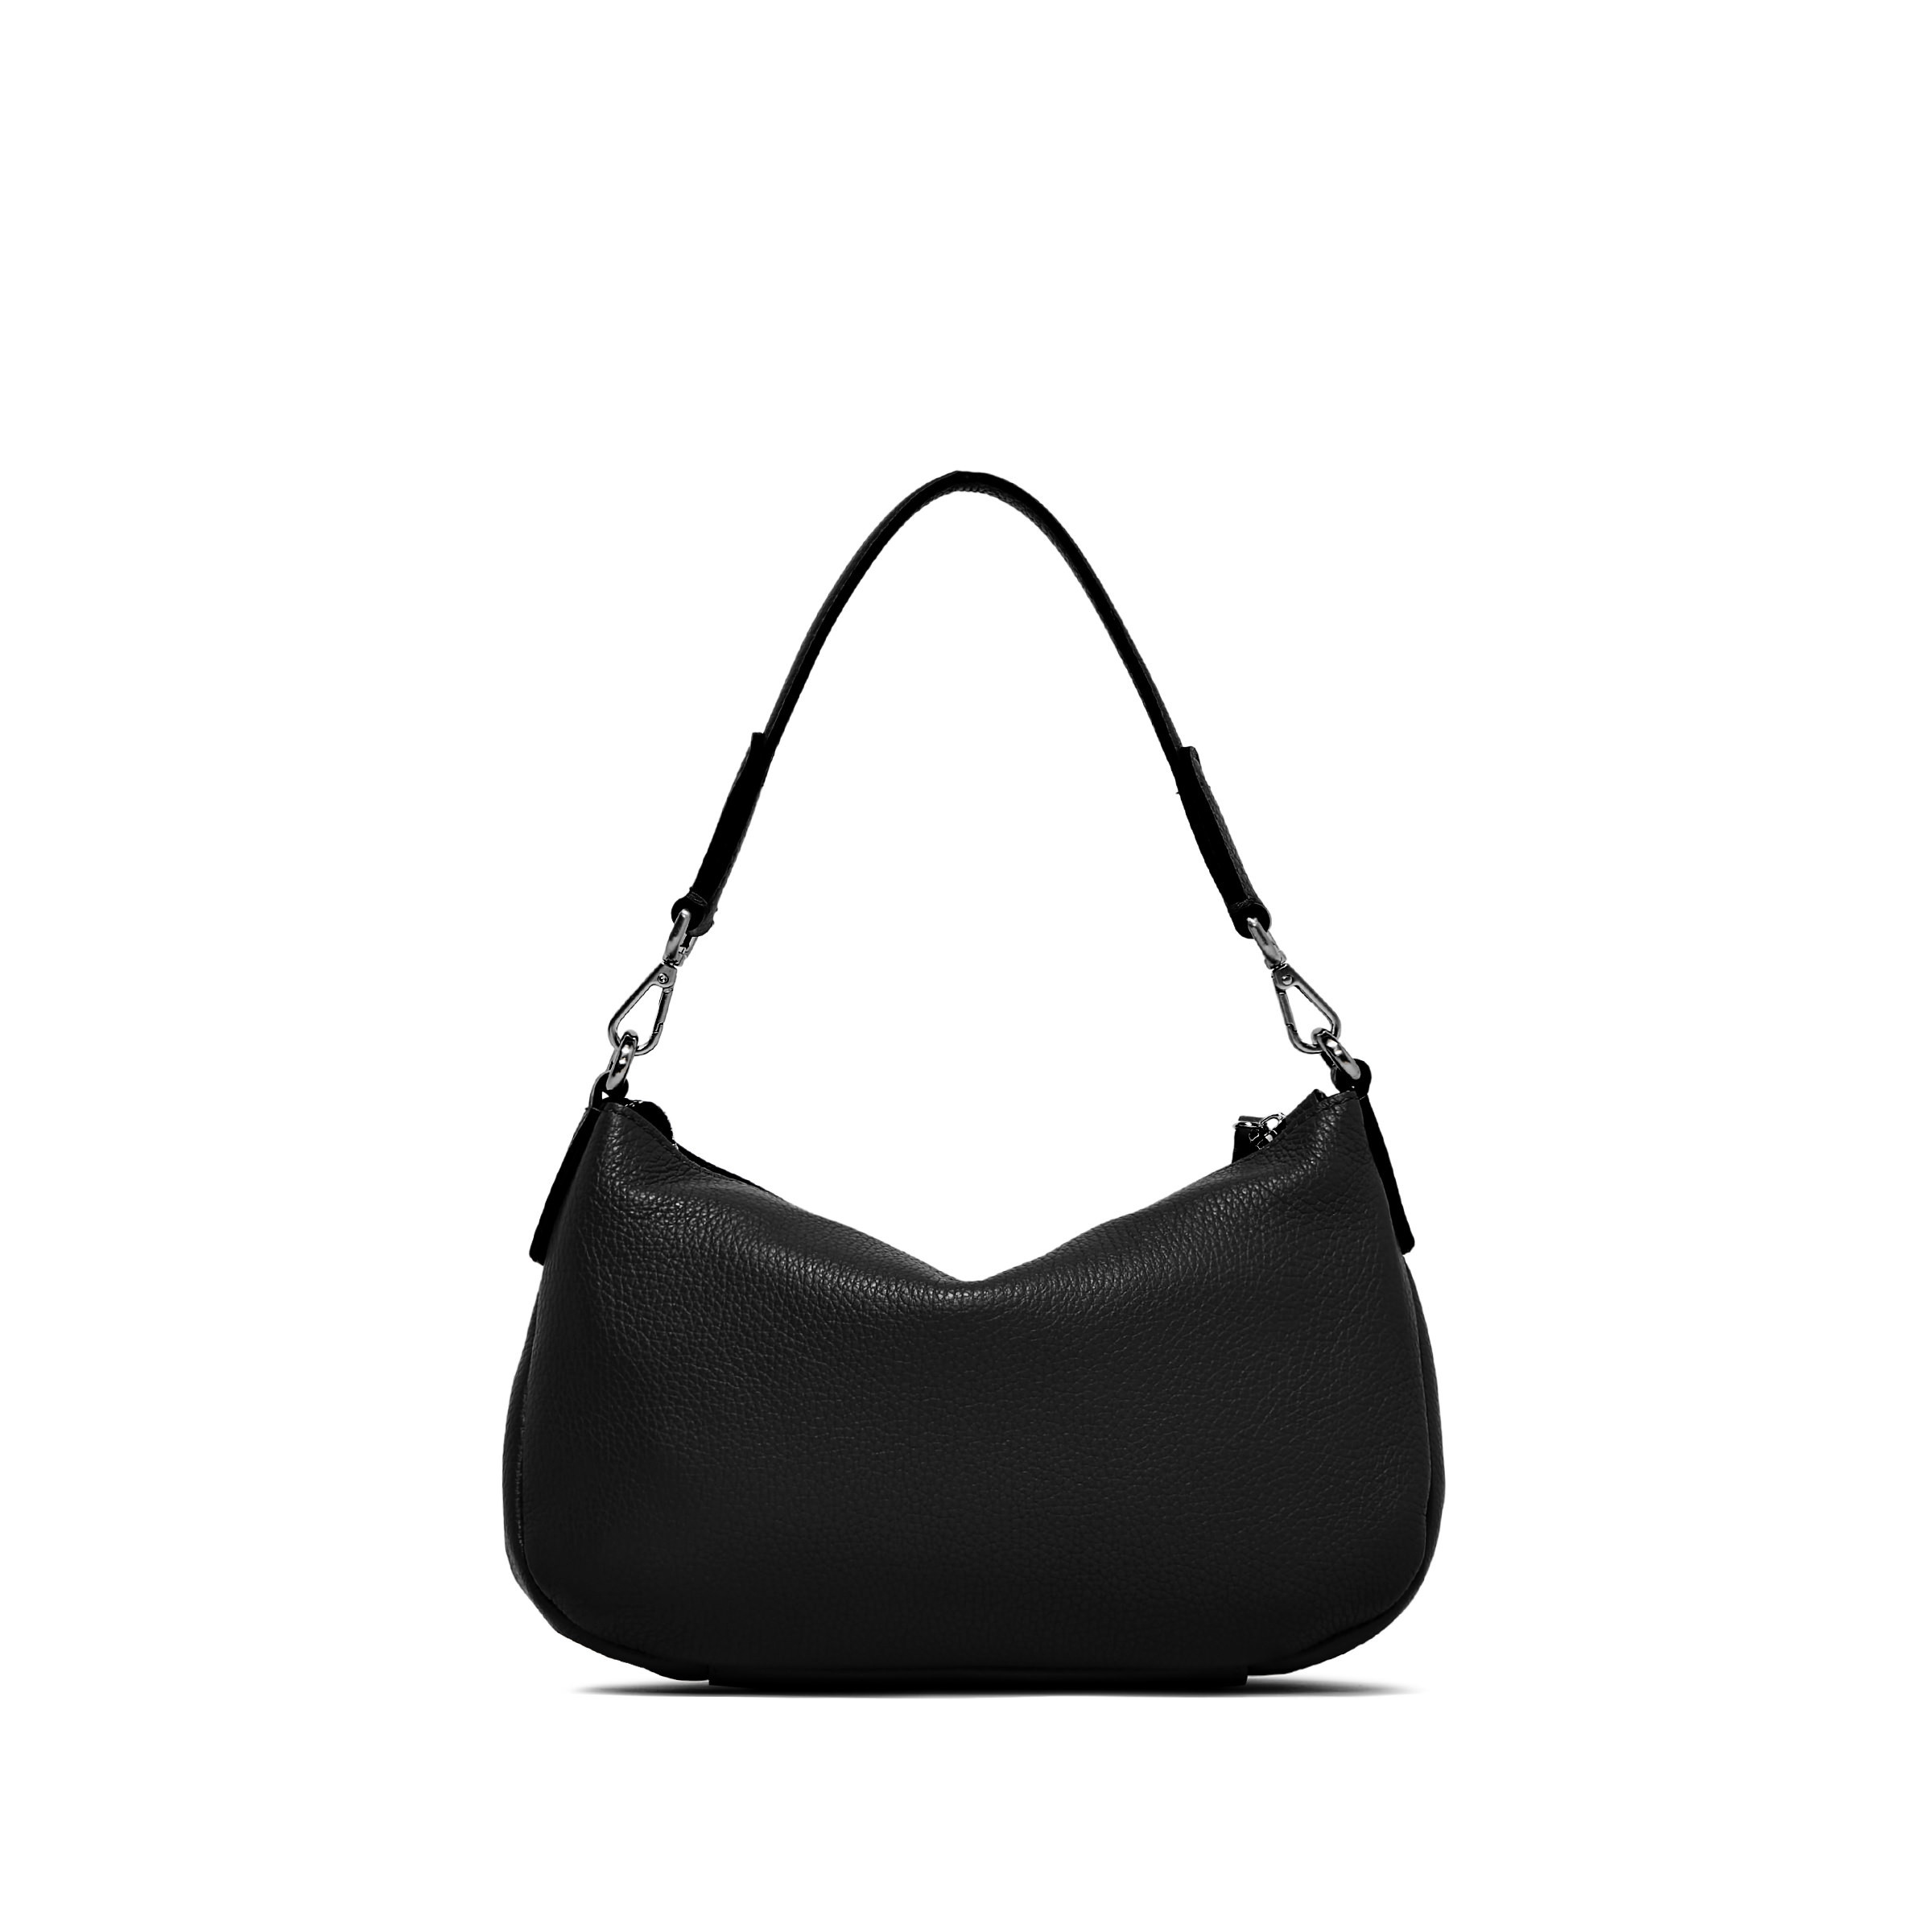 Gianni Chiarini - Nadia Leather bag, Black, large image number 3